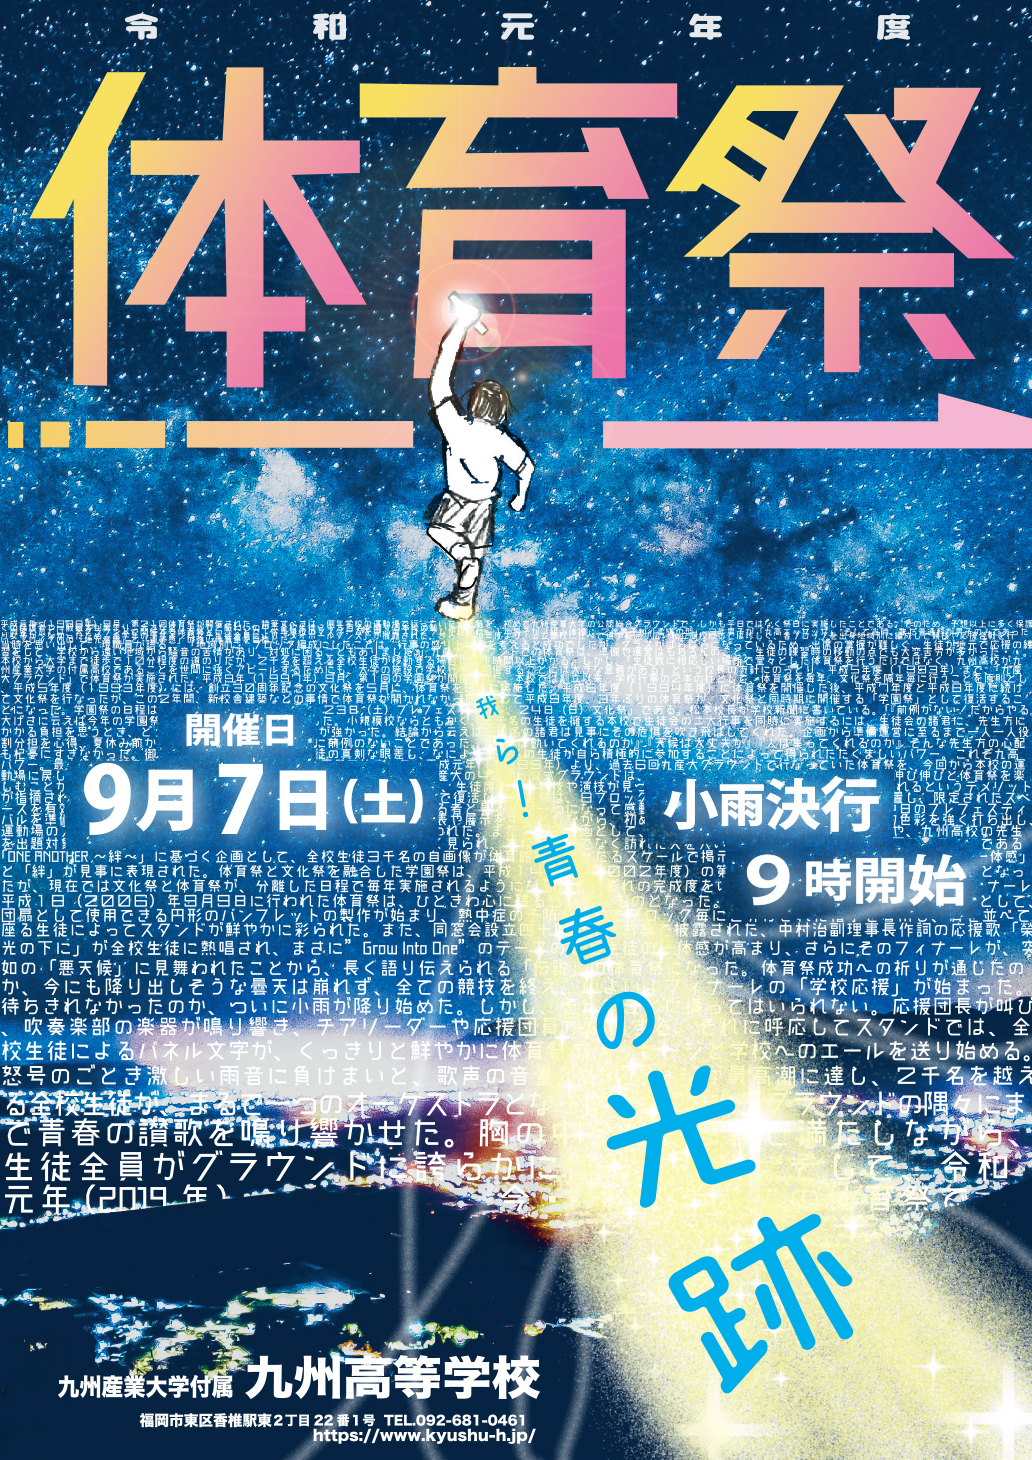 九州高等学校 造形芸術科サイト 令和元年度 体育祭ポスター